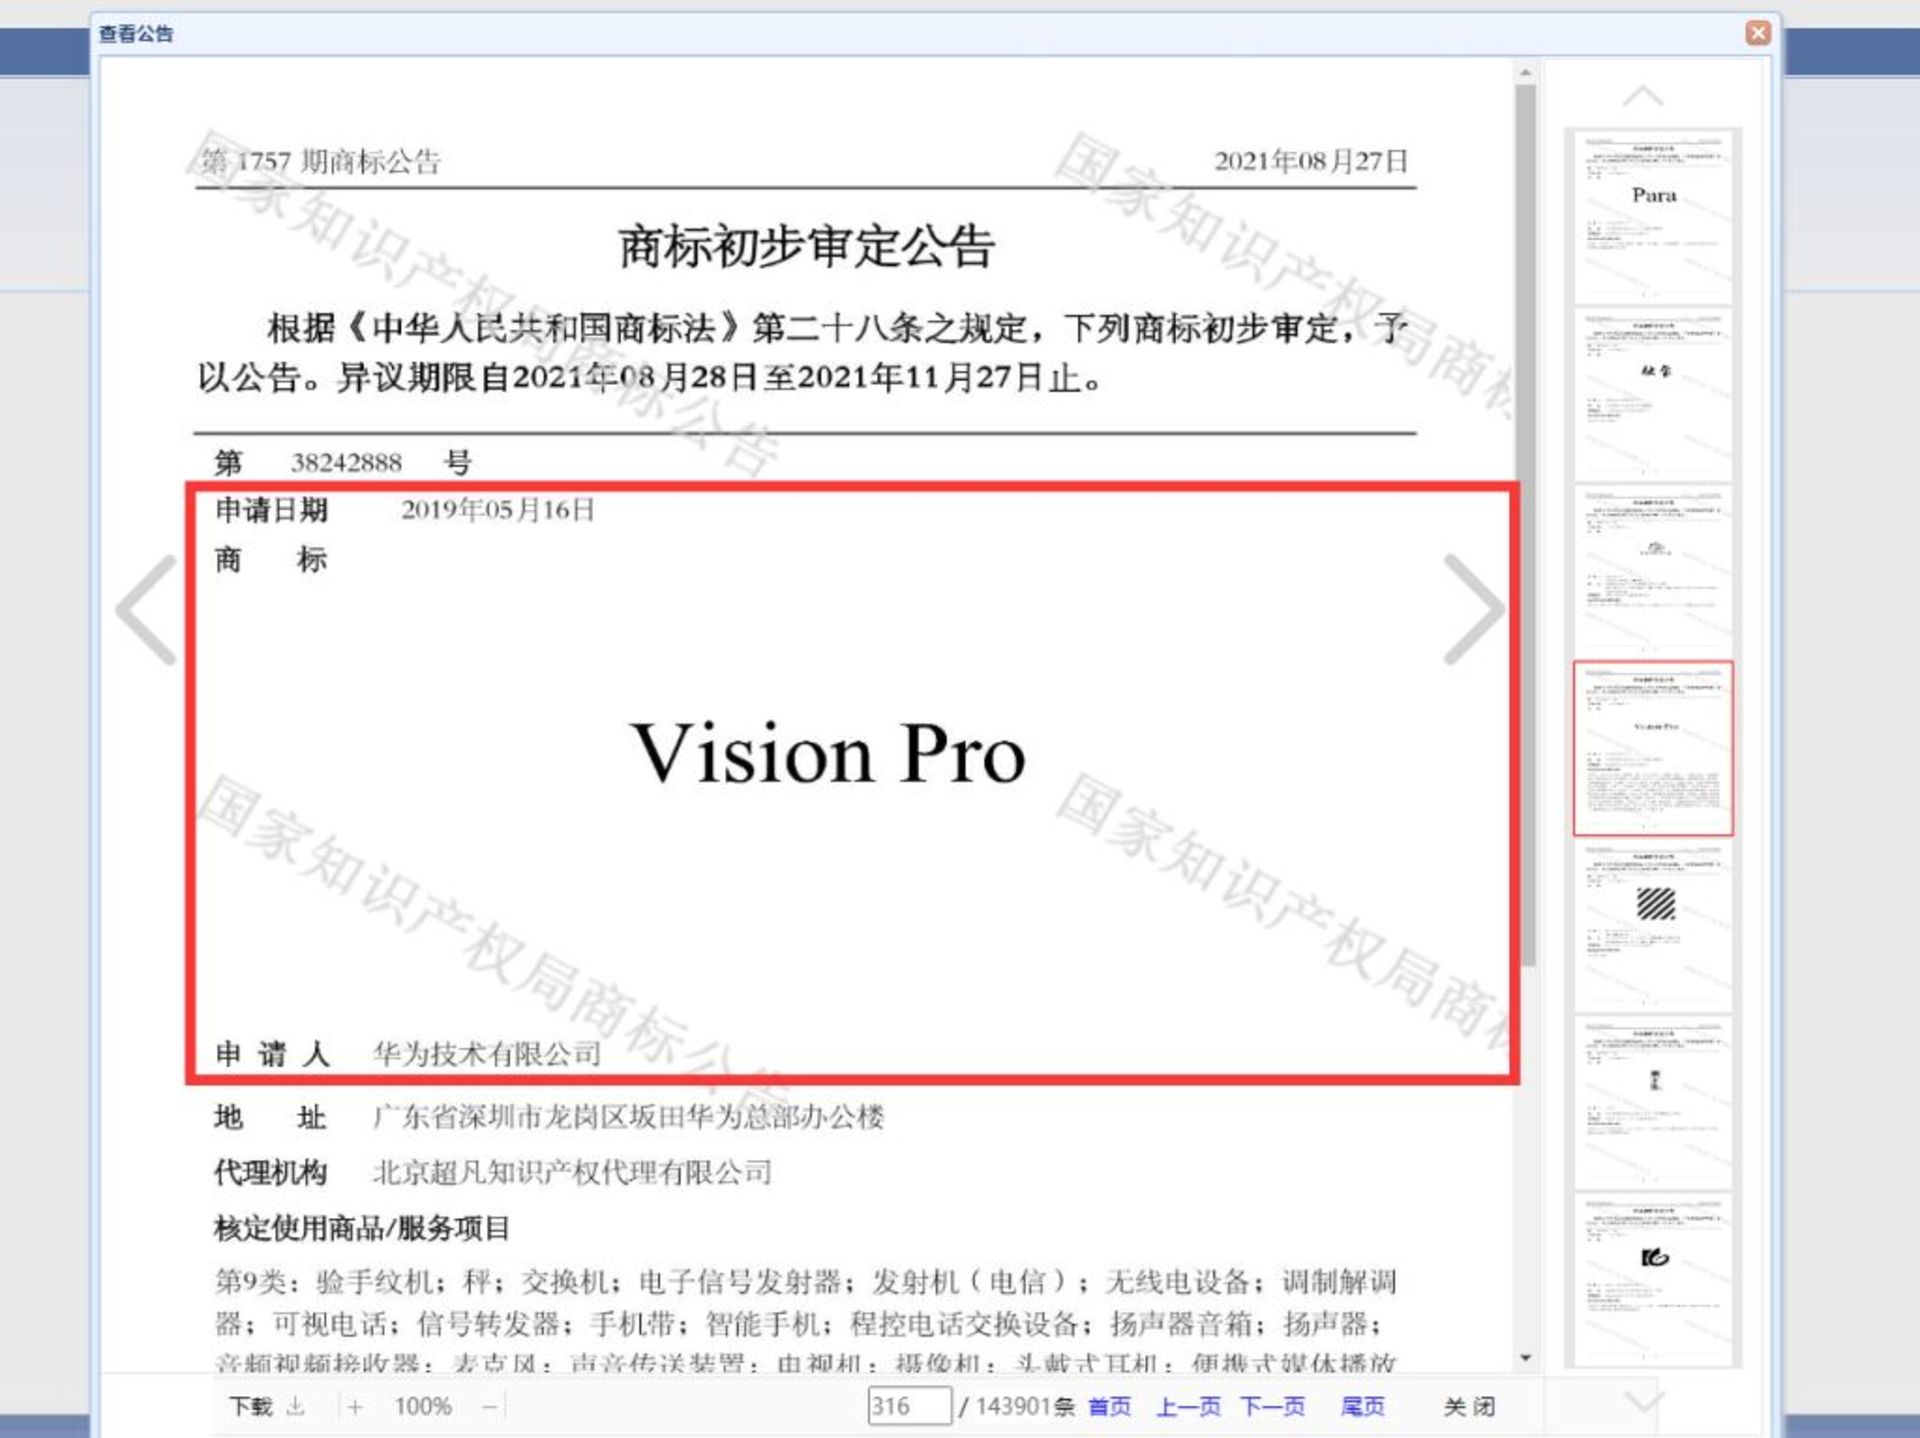 ثبت نشان تجاری ویژن پرو توسط هواوی در چین